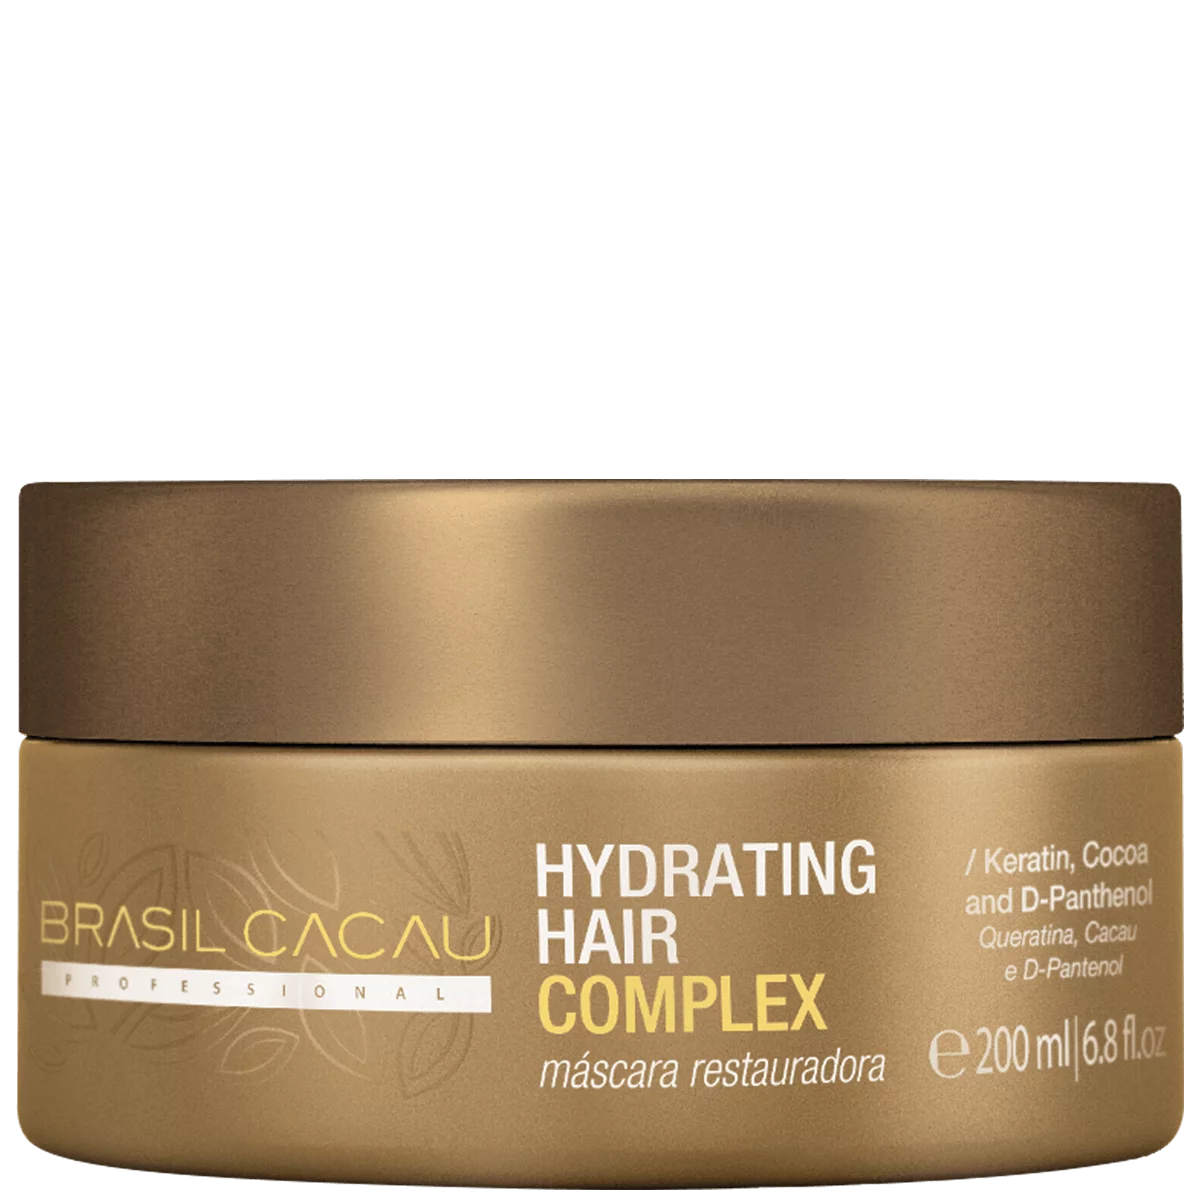 Brasil Cacau Professional Hydrating Complex Hair Mask (200 ml) Brasil Cacau Professional